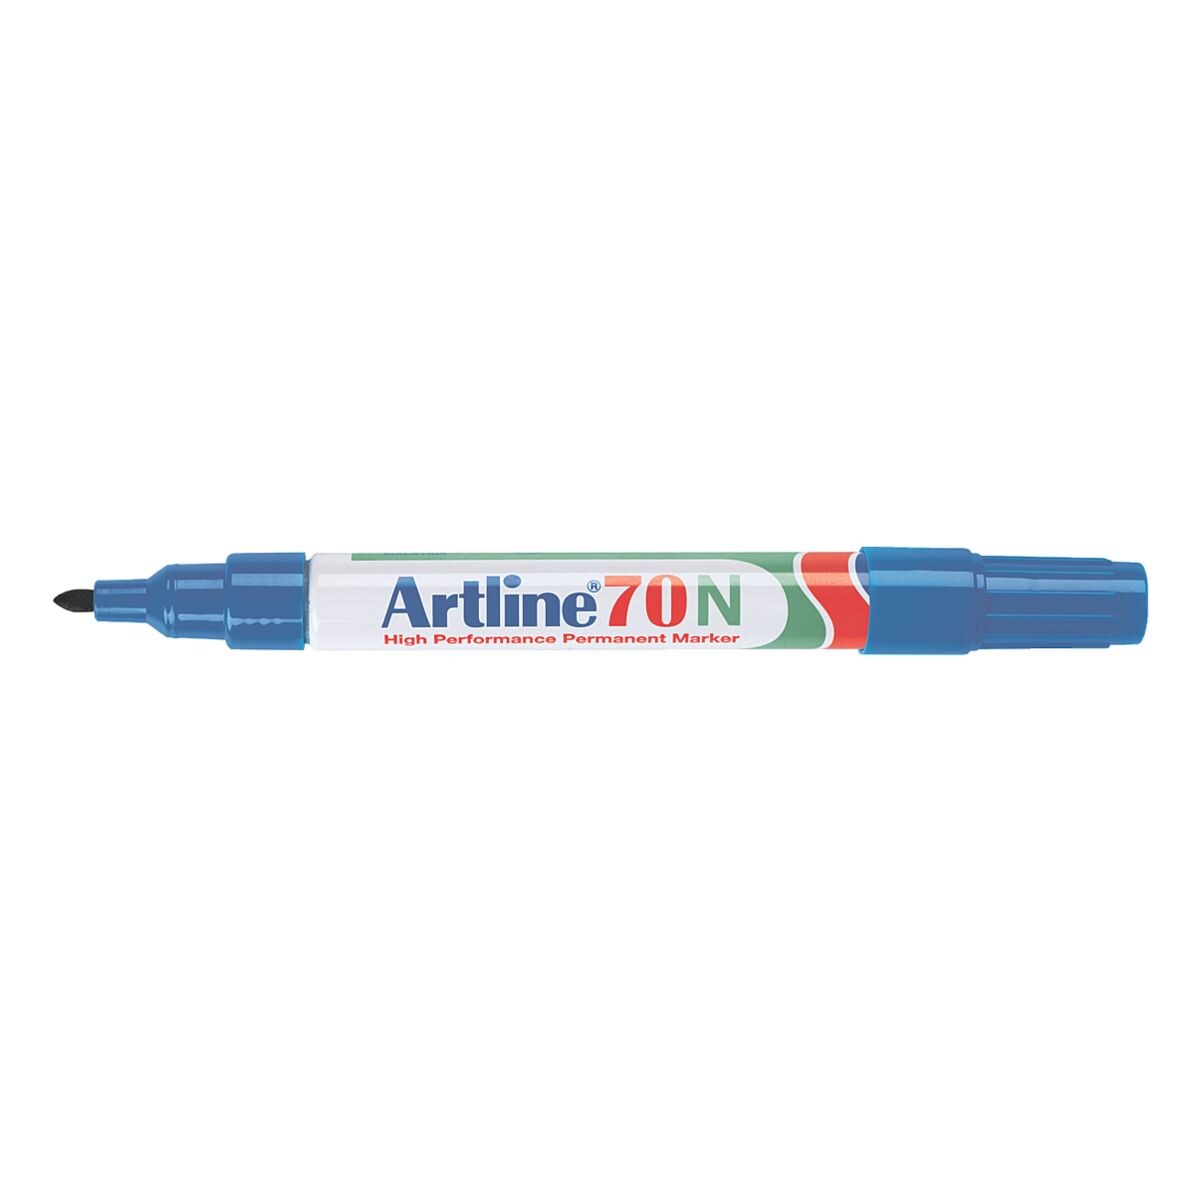 Artline marqueur indlbile 70N - pointe ogive, Epaisseur de trait 1,5 mm